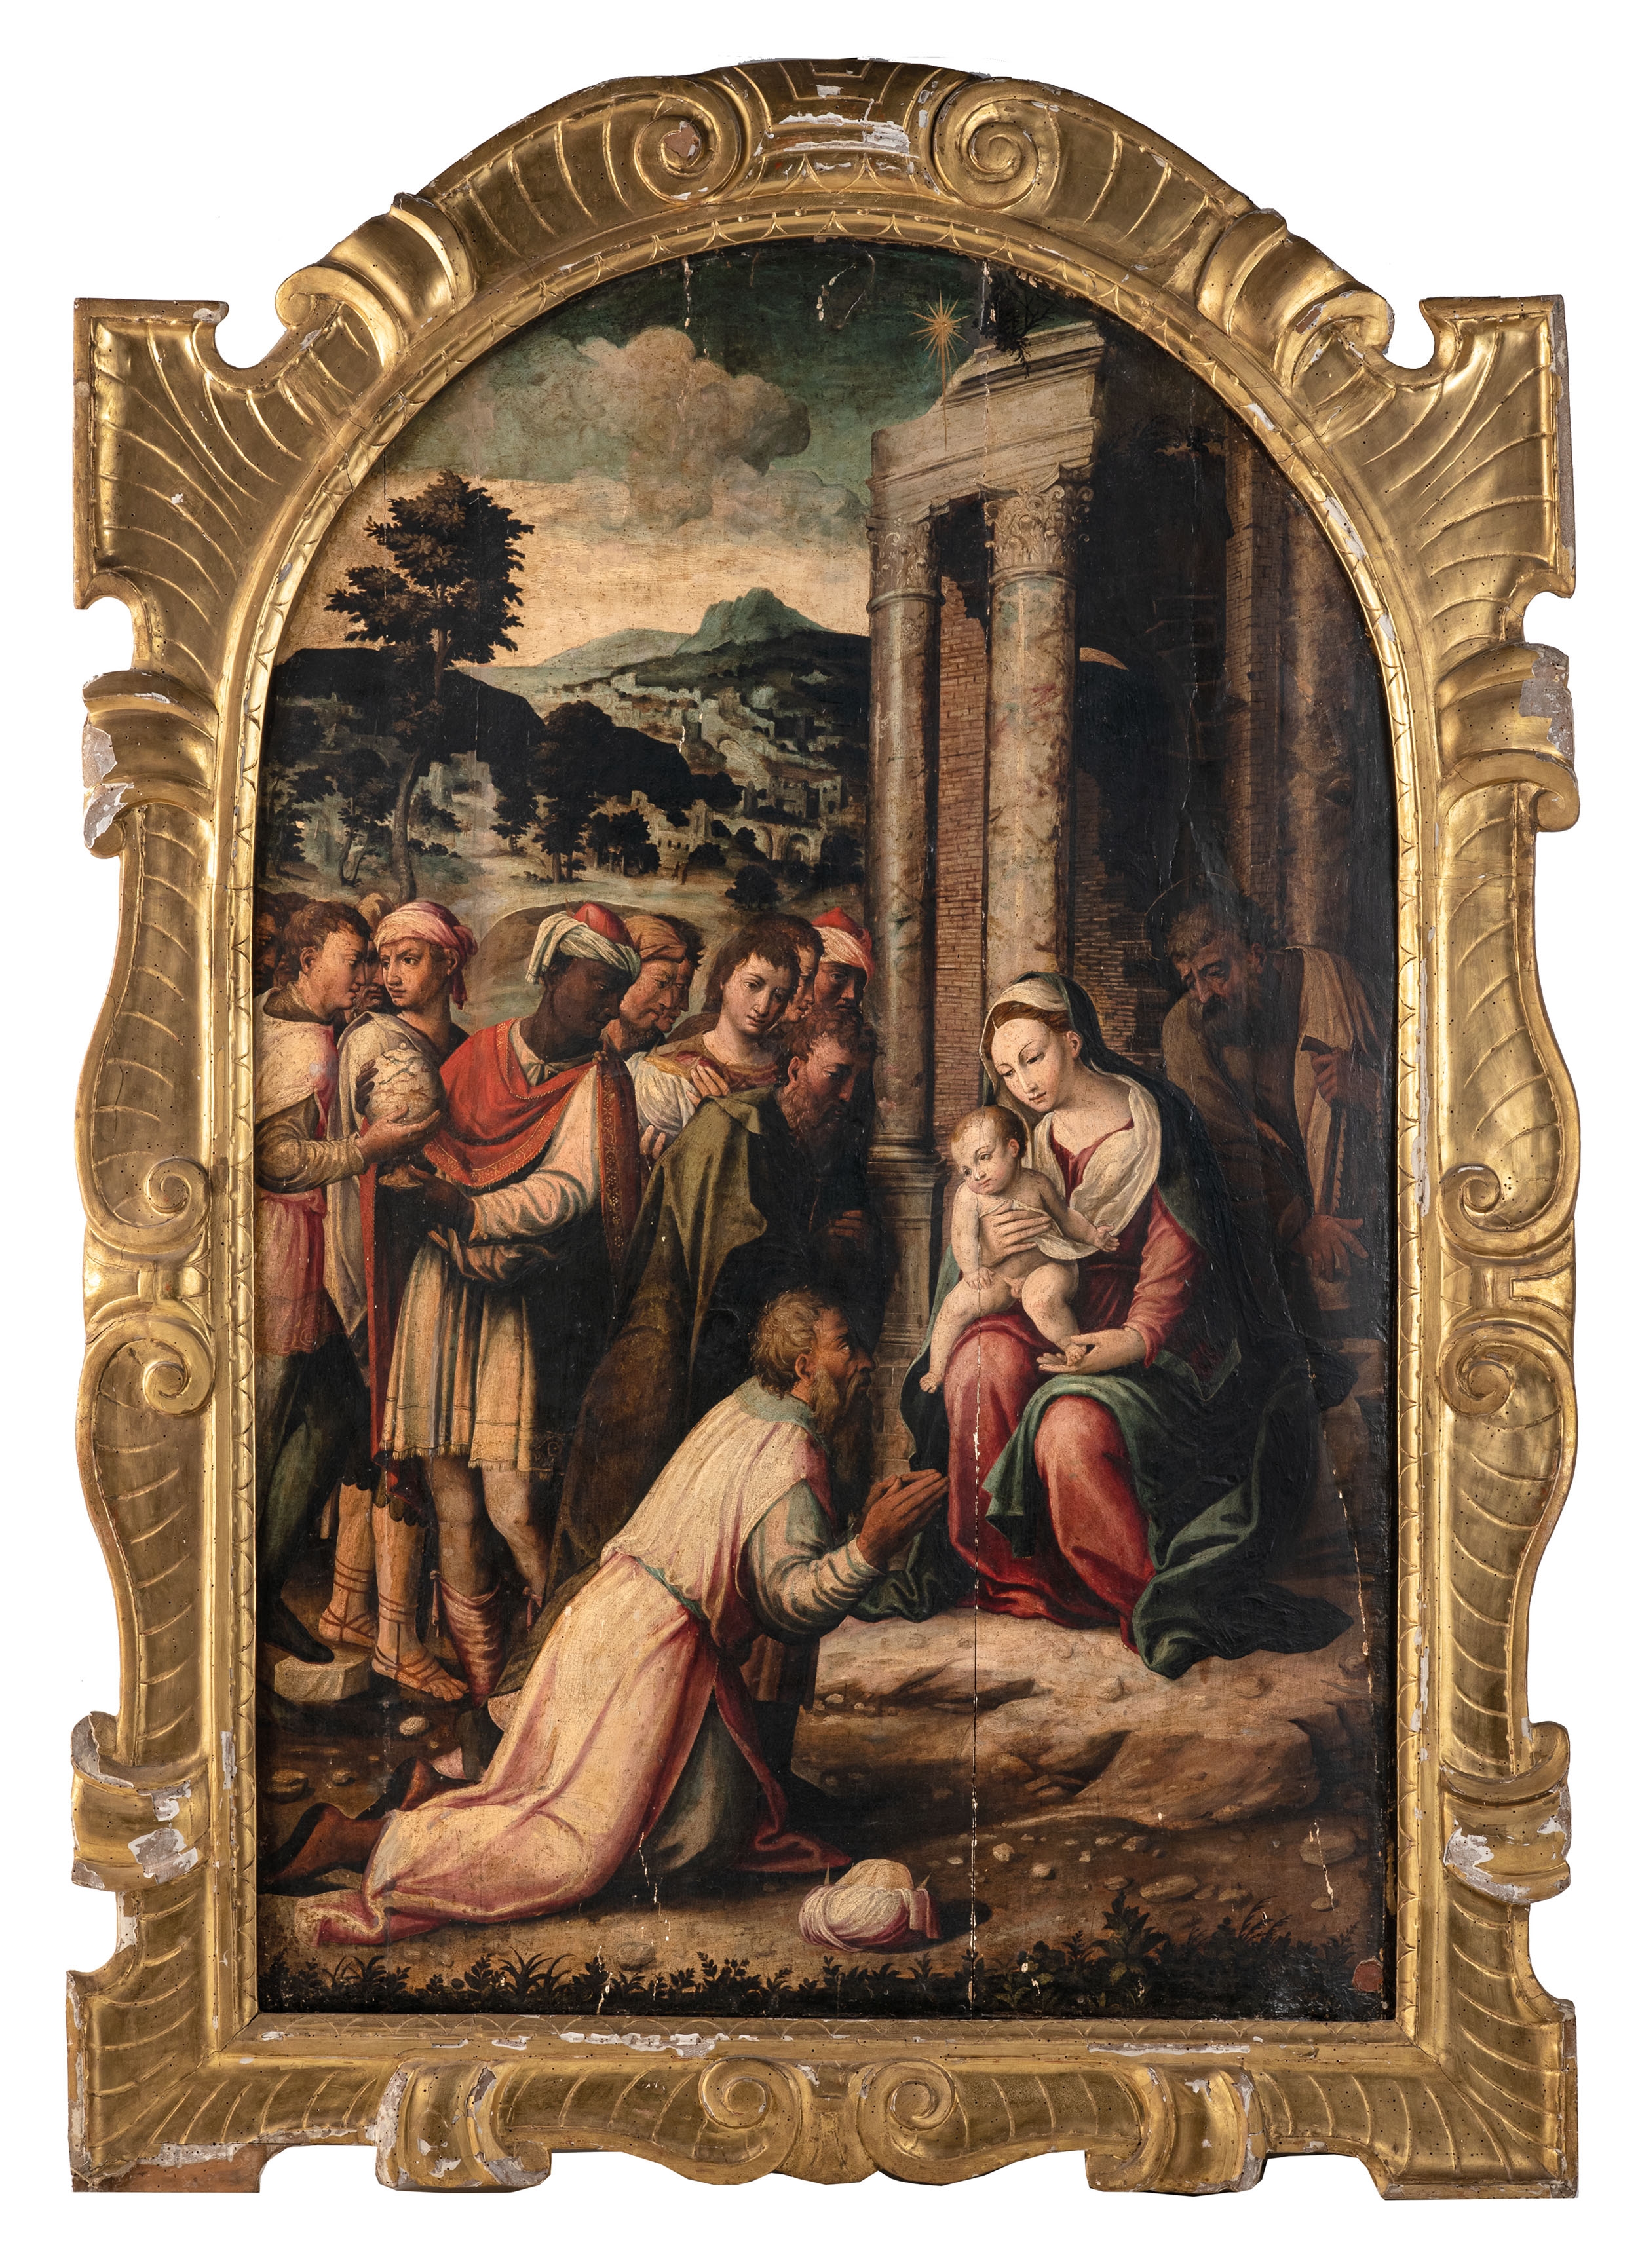 Artwork by Cristoforo Magnani, Adorazione dei Magi, Made of Oil on panel